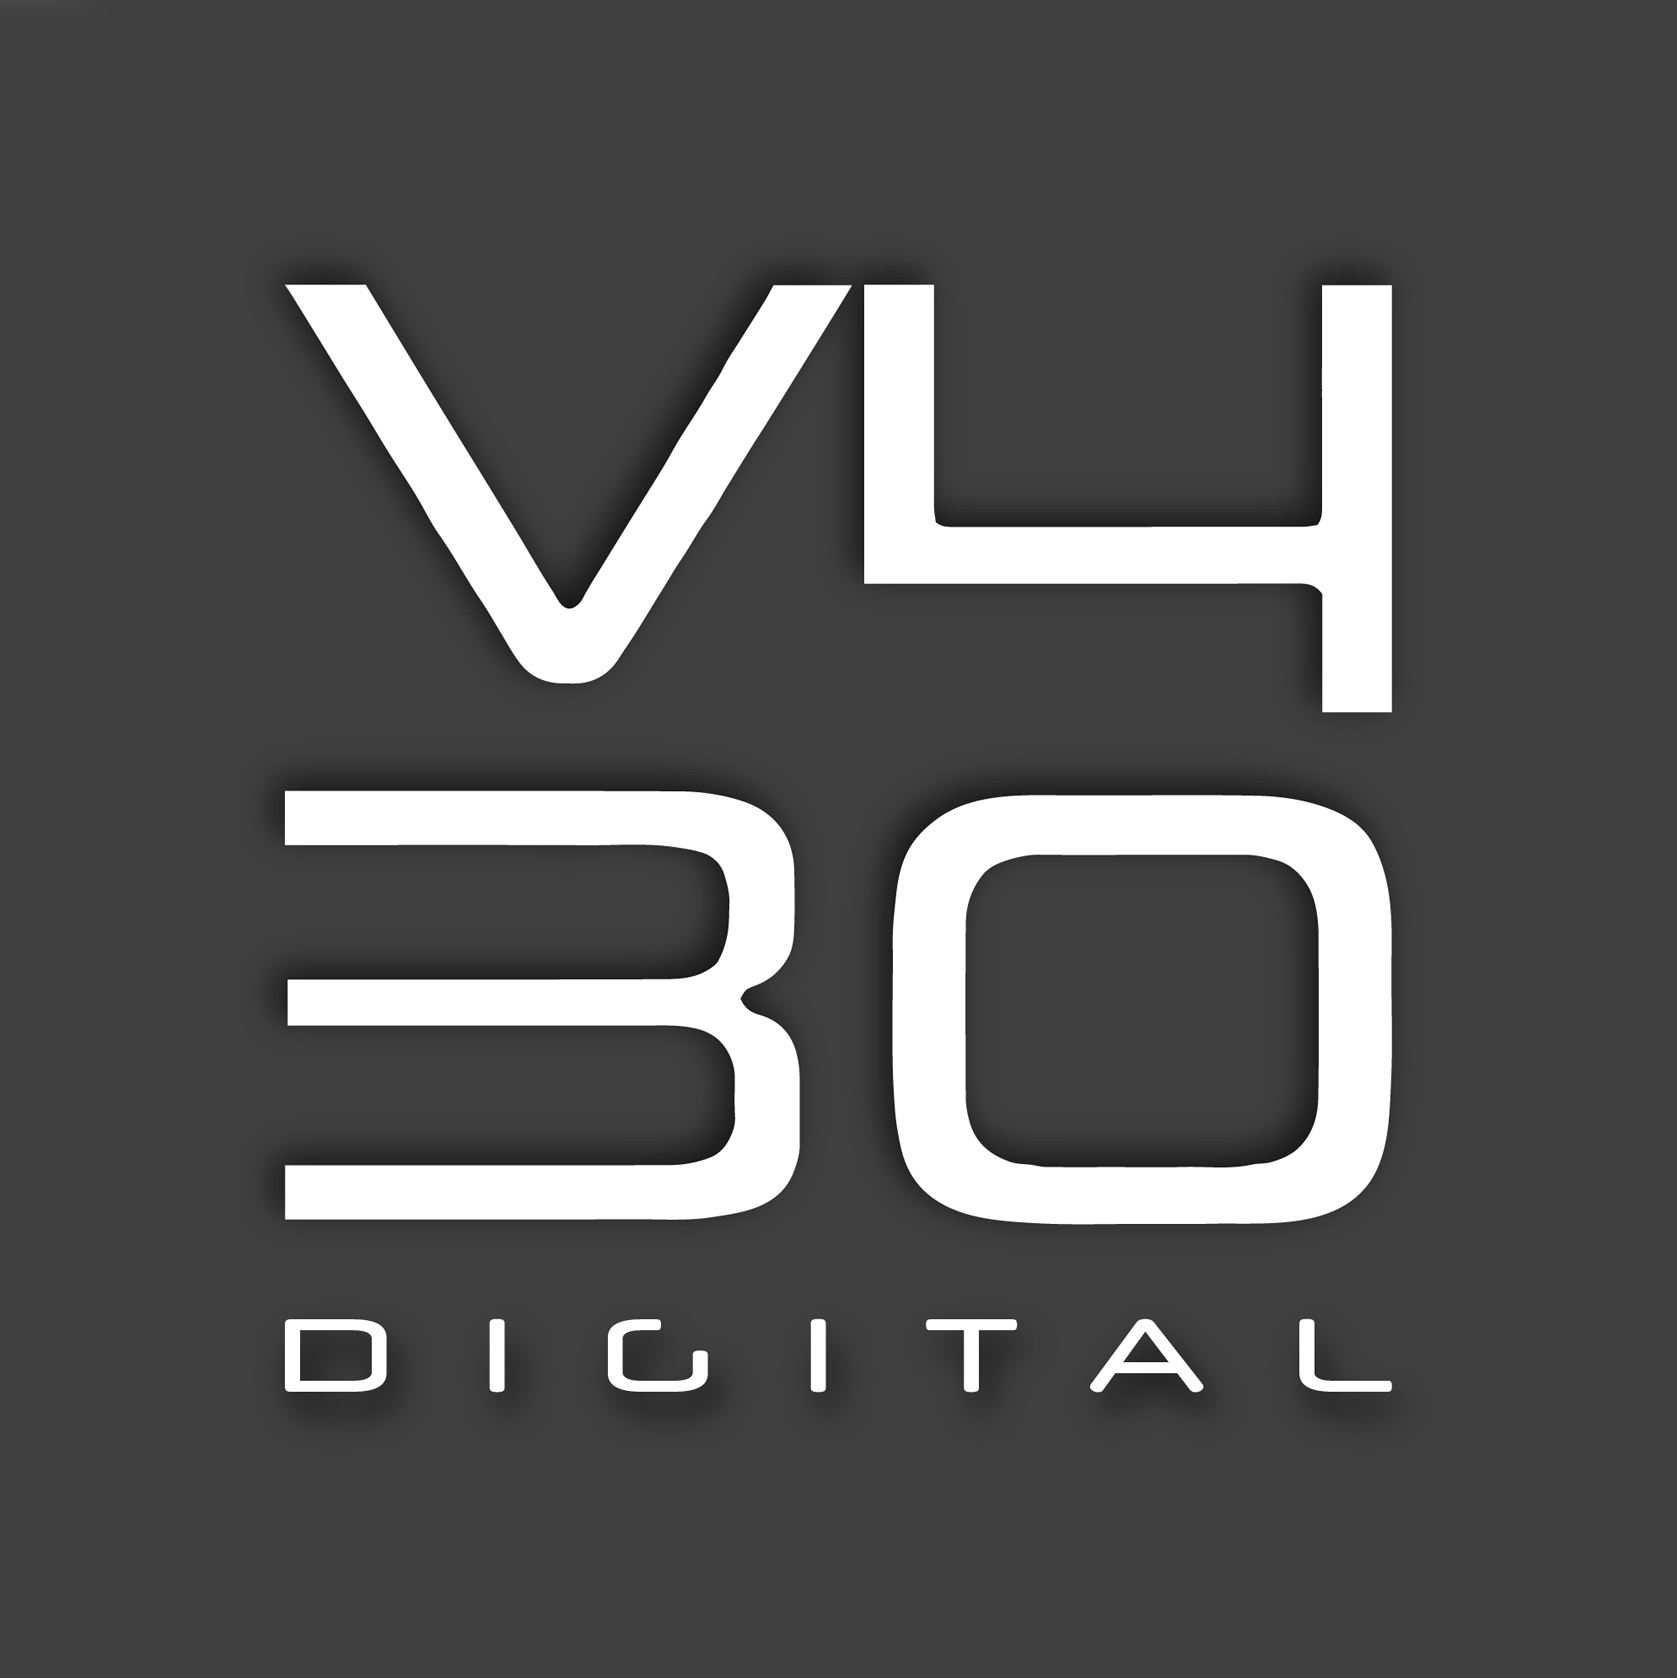 V430 Digital